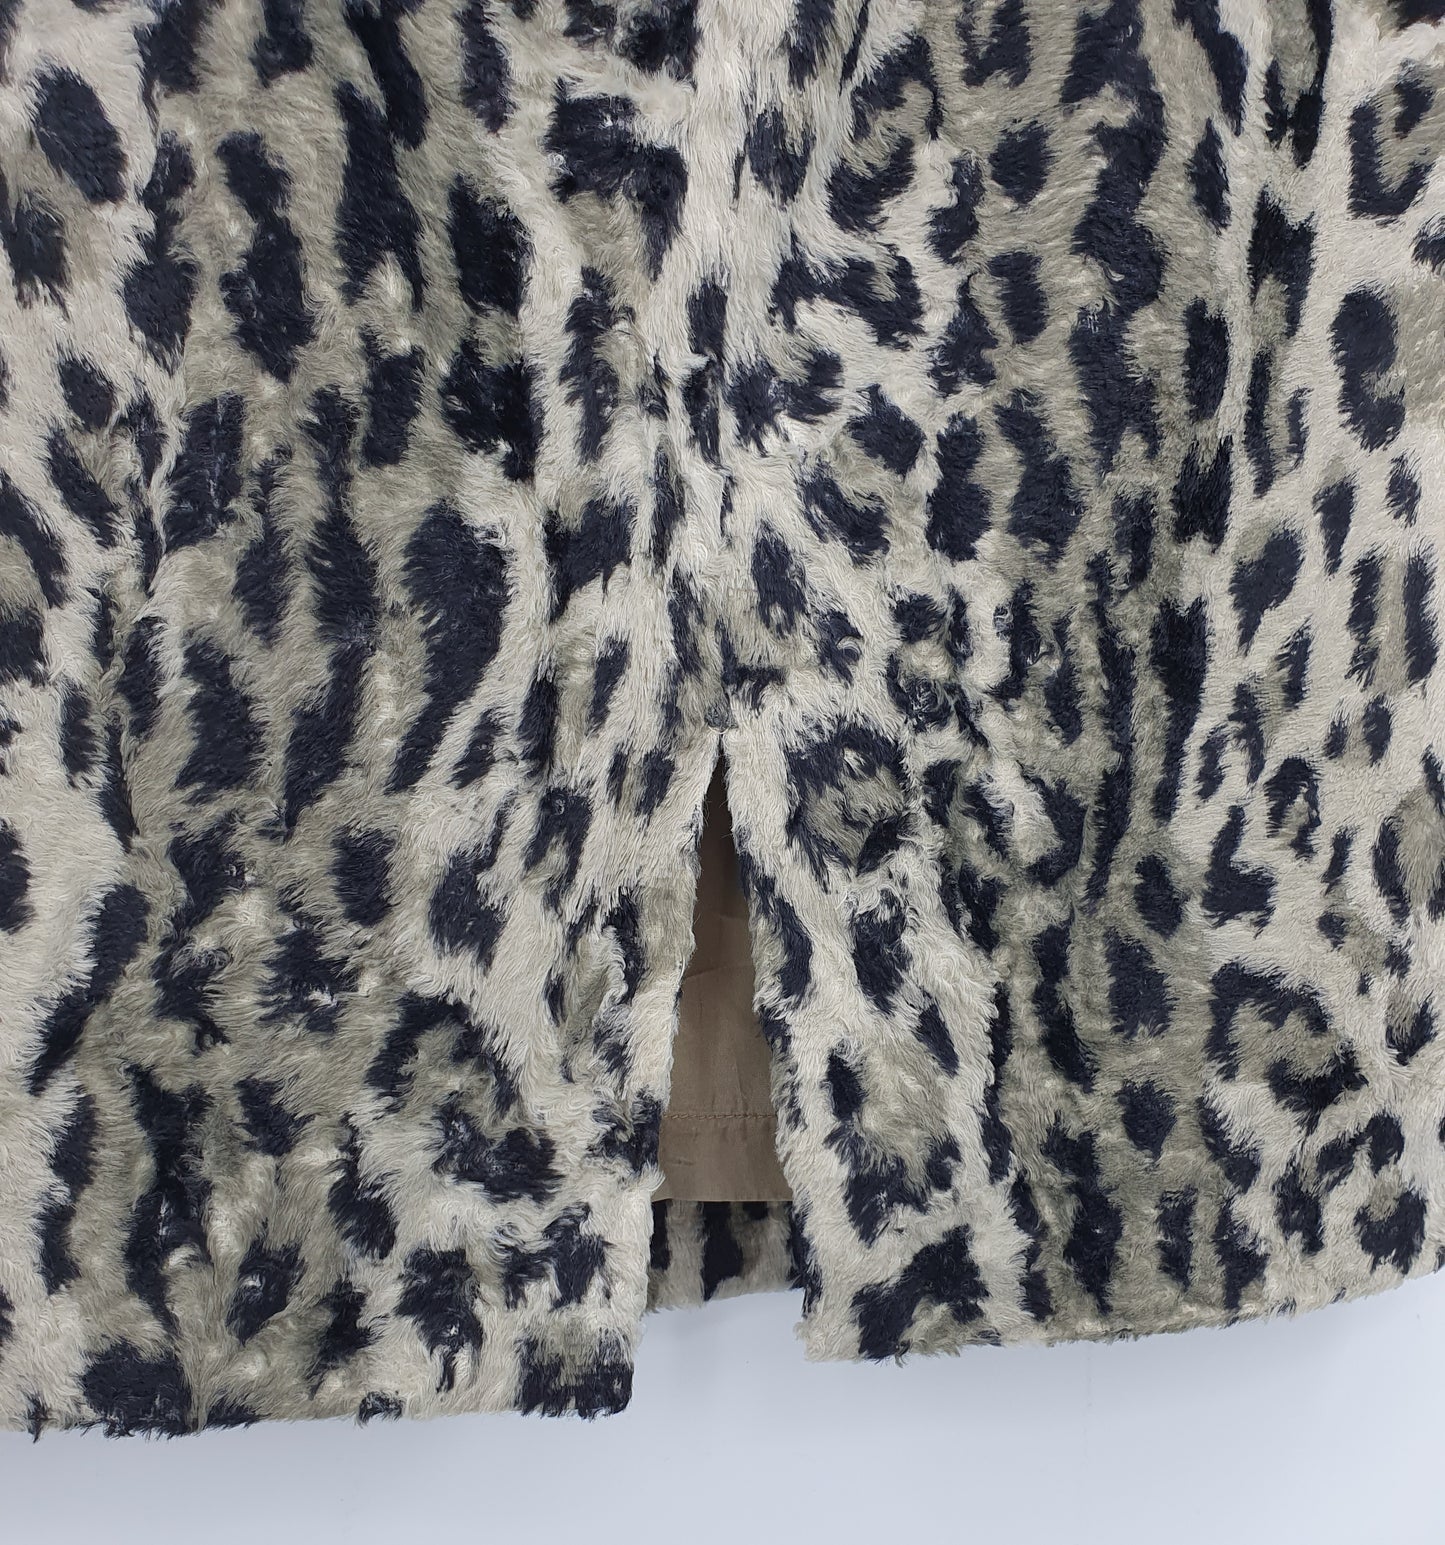 Marly's, leopardikuvioinen hame, 80-90-luku, vyöt.ymp. 86cm, kokoarvio 42